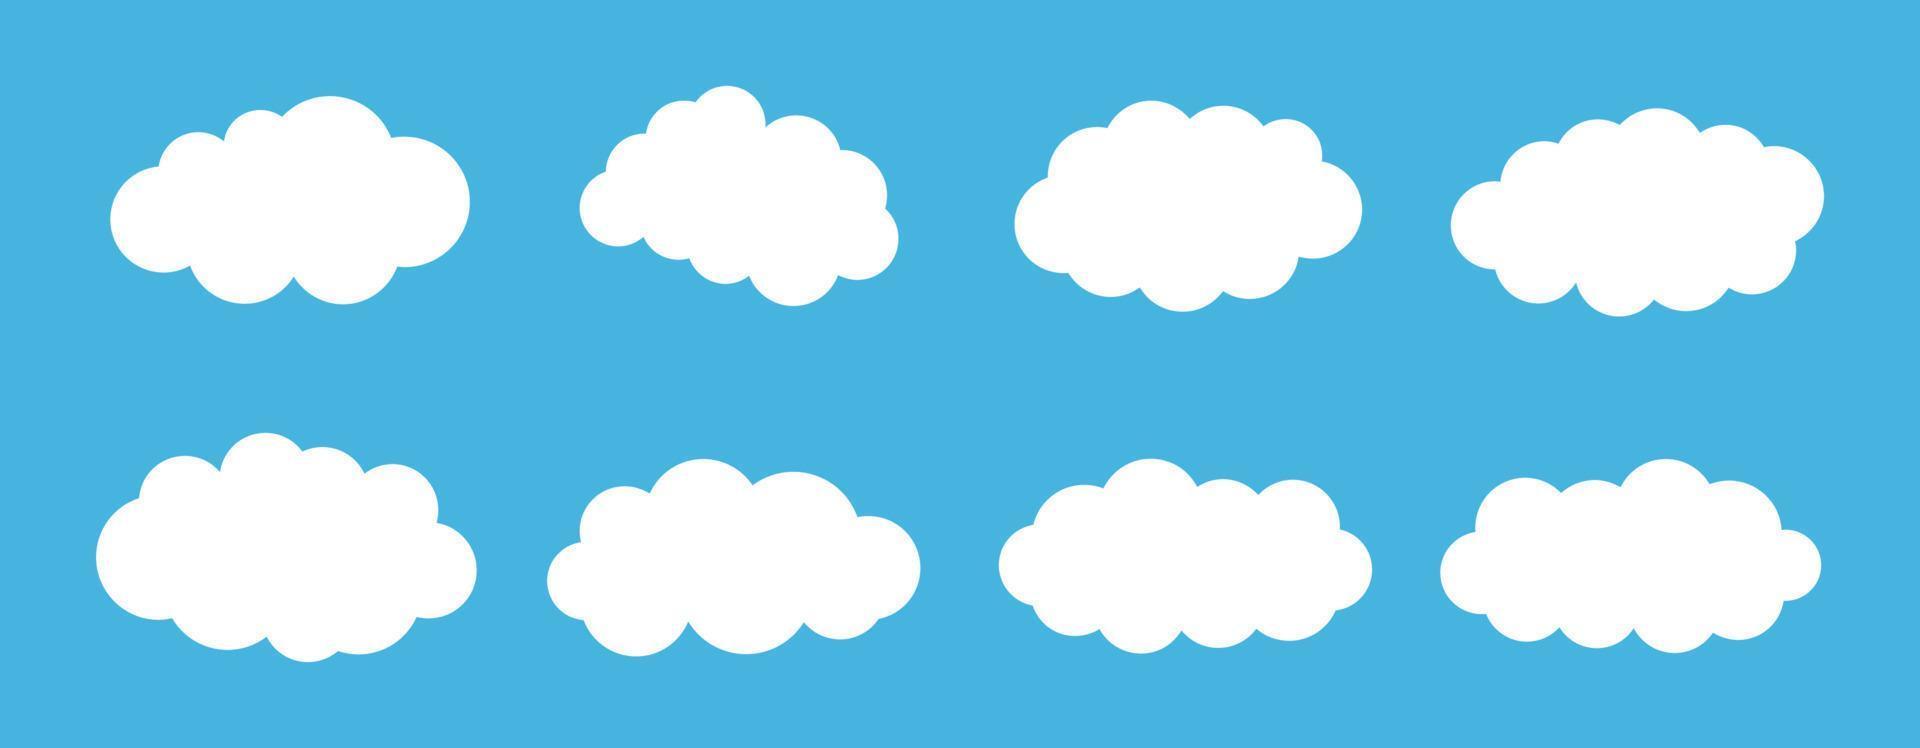 conjunto de iconos de nube, conjunto de vectores de nube, conjunto de imágenes prediseñadas de nube conjunto de iconos negros